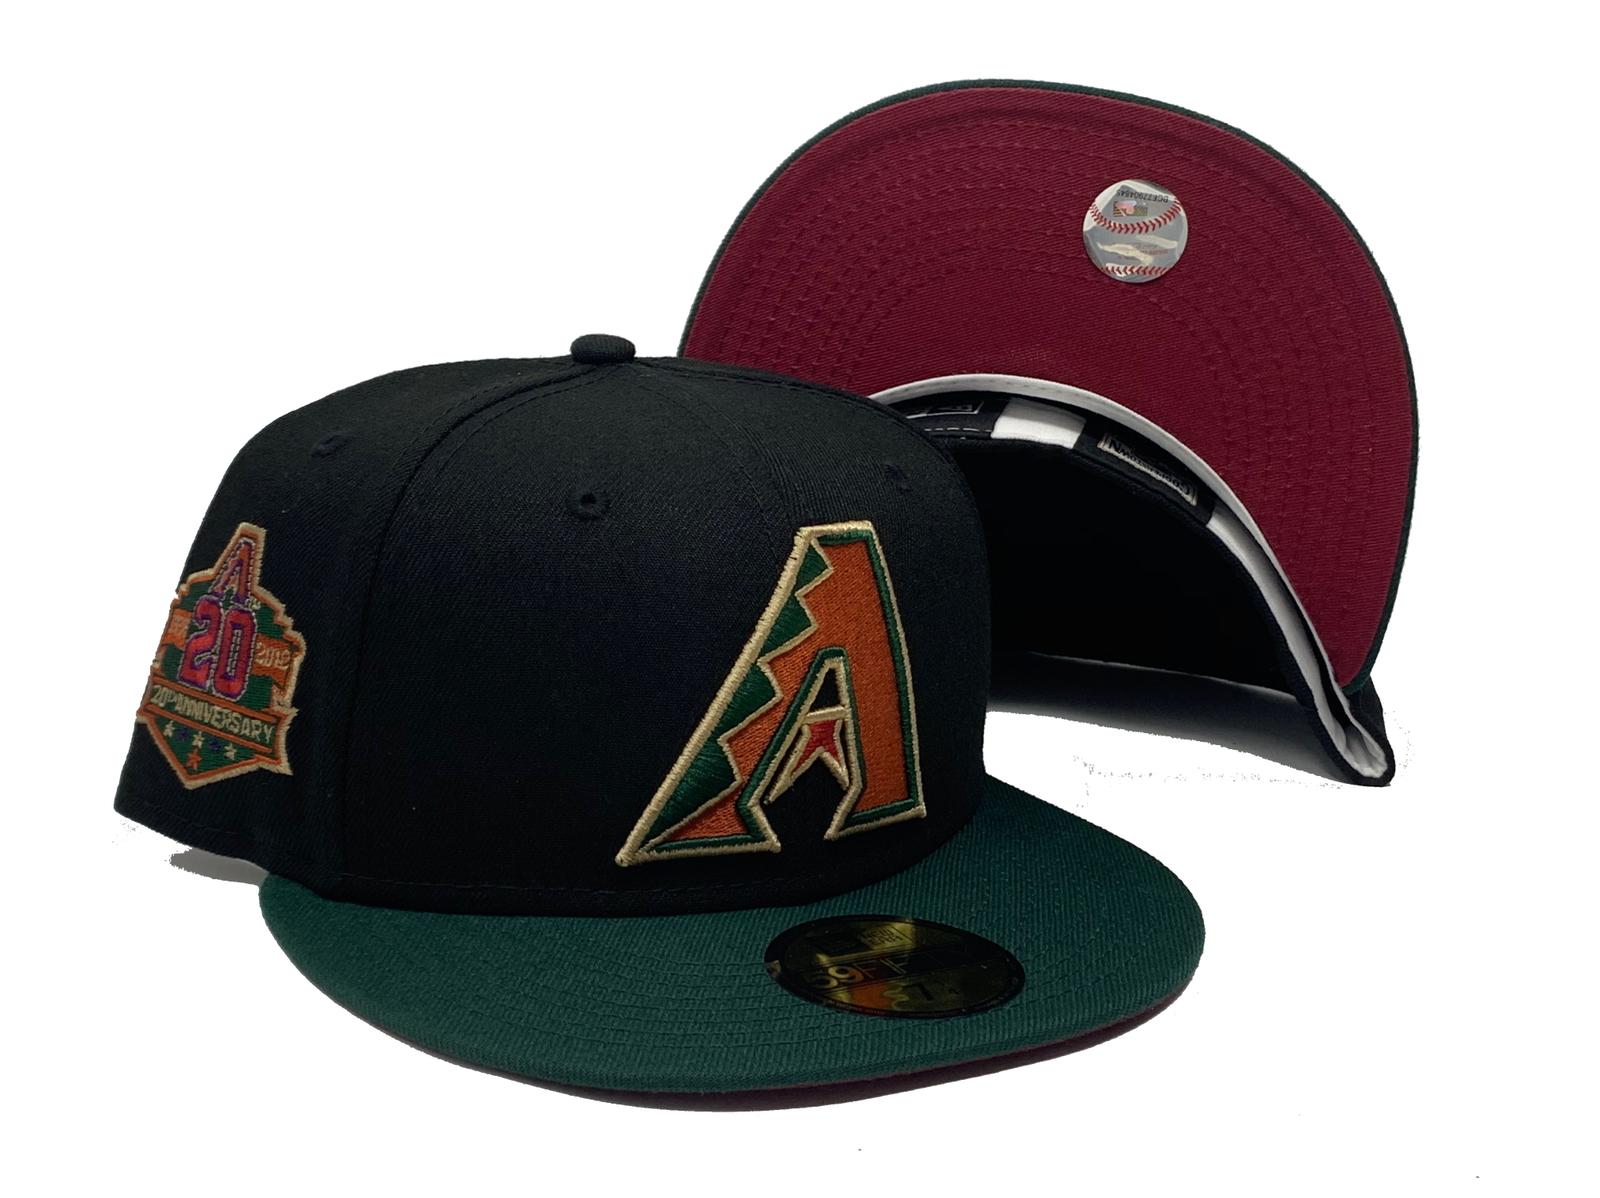 Official Arizona Diamondbacks New Era Hats, Diamondbacks Cap, New Era  Diamondbacks Hats, Beanies